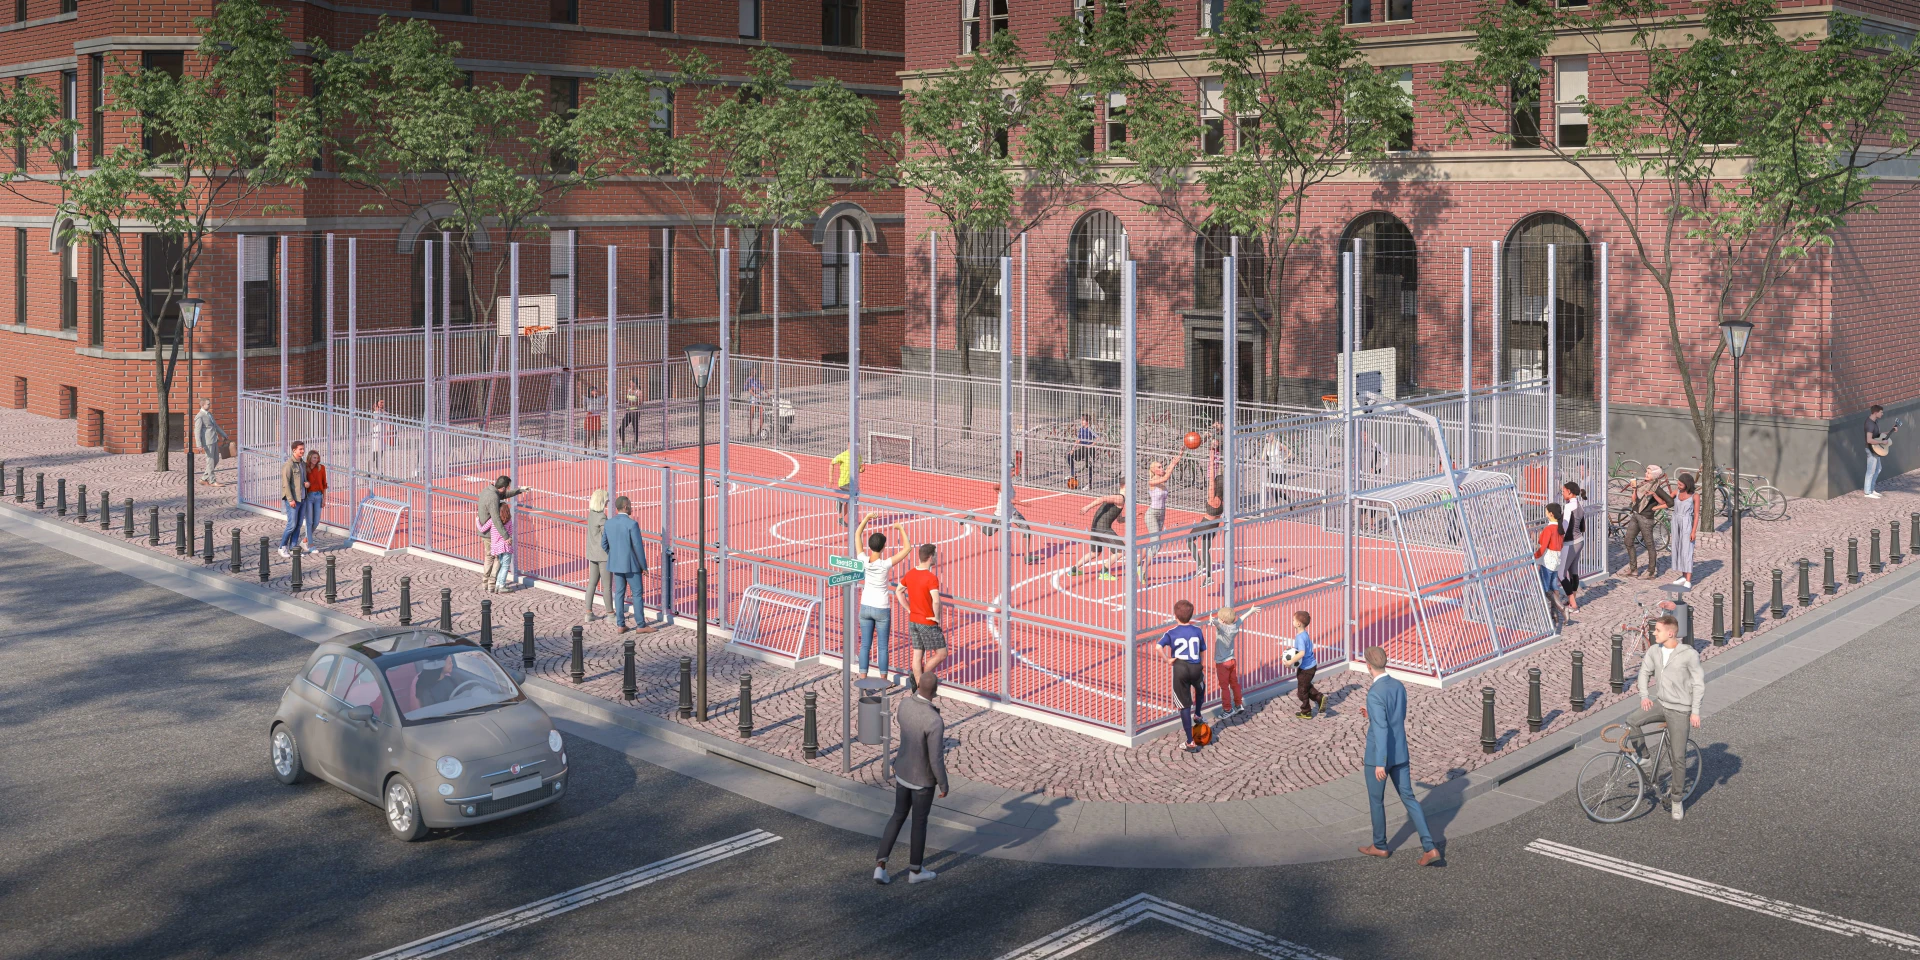 Design-Lösung einer Multiballsport-Arena im Stadtzentrum